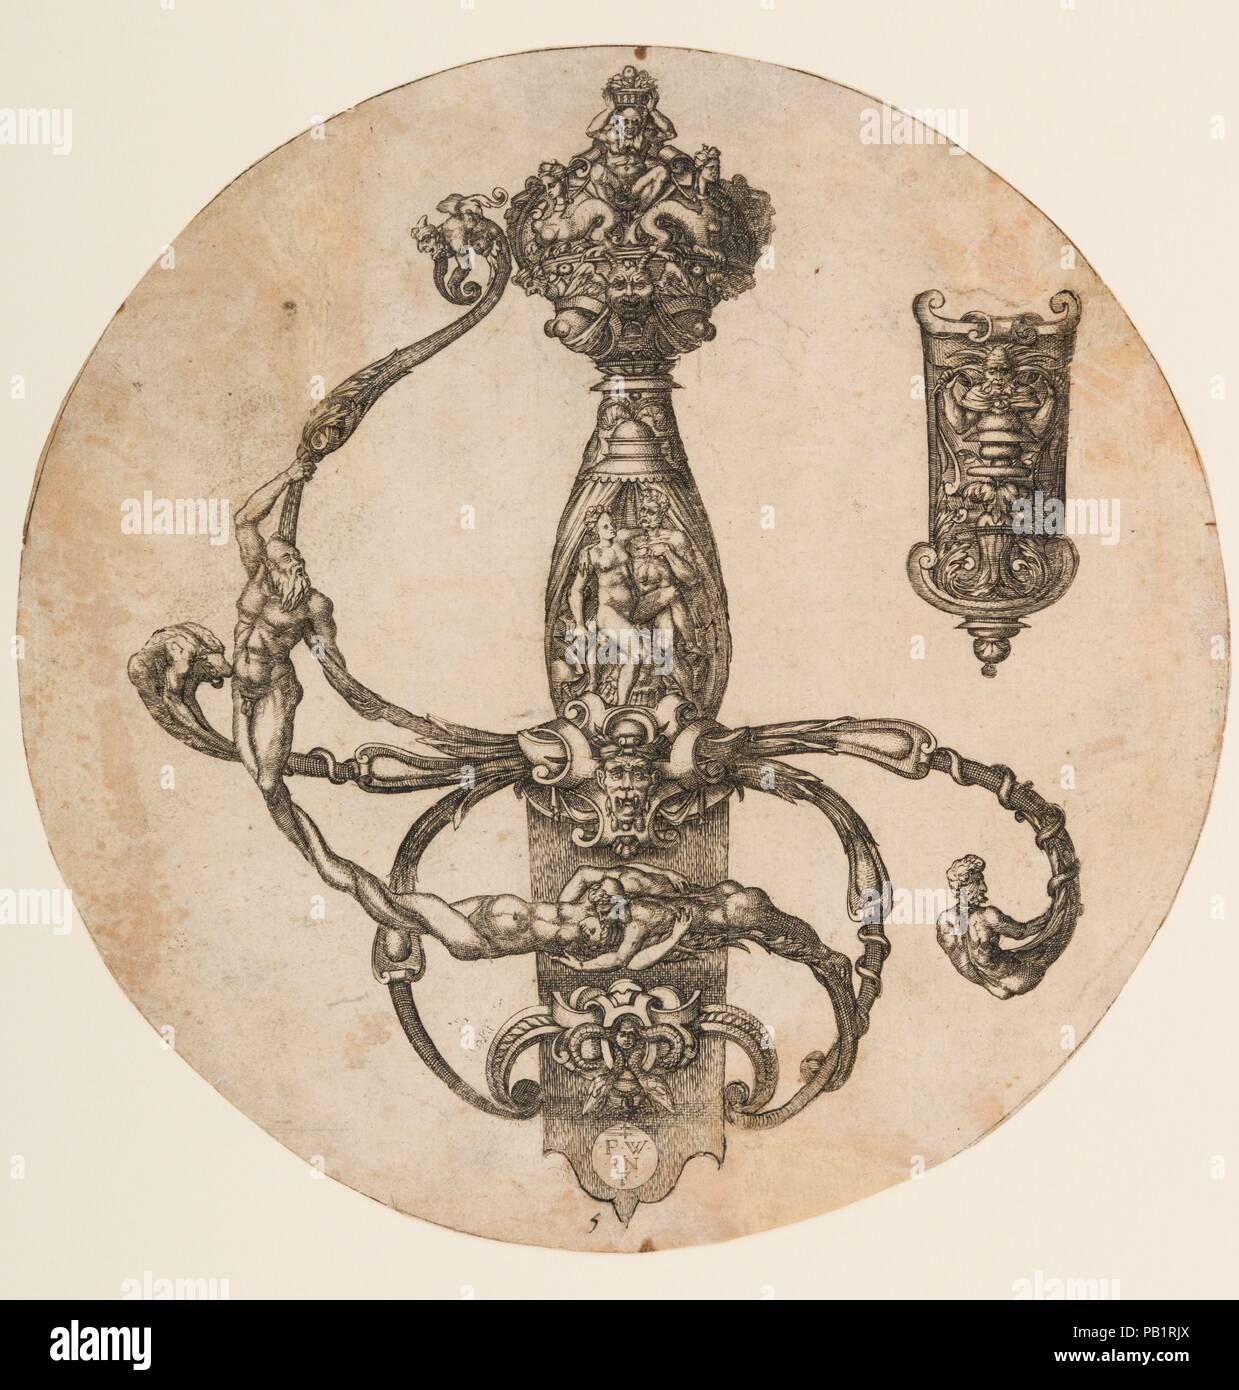 Design per una pinza di Elsa e fodero cappella. Artista: Pierre Woeiriot de Bouzey II (francese, Neufchâteau Damblain 1532-1599). Cultura: francese. Dimensioni: diam. 7 1/2 in. (19,1 cm). Data: 1555. Questa stampa di un riccamente decorate rapier elsa è una bella impressione da una rara serie di piastre di Pierre Woeiriot, un orafo e incisore prolifico. È anche un eccellente esempio di design e ornamentazione di bracci di lusso nella metà del XVI secolo in Francia. L'uso di figure umane, grottesche e strapwork mostra l'influenza del manierismo francese e Fontainebleau stile, che è stato sviluppato Foto Stock